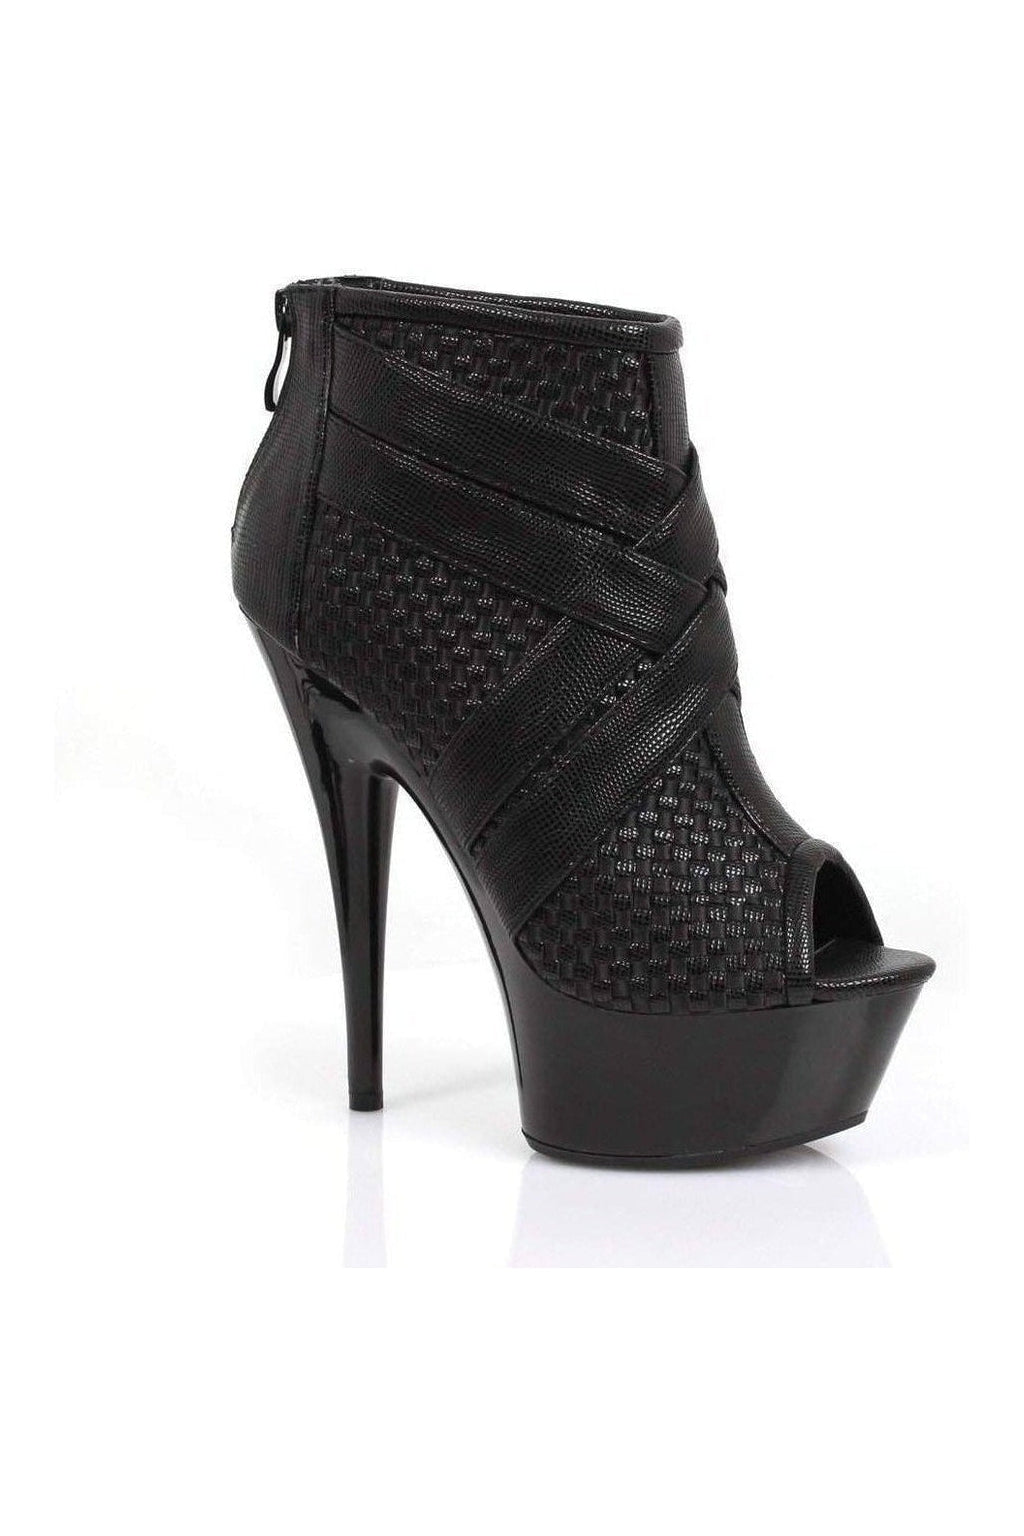 609-MONIC Ankle Boots | Black Patent-Ellie Shoes-Black-Ankle Boots-SEXYSHOES.COM